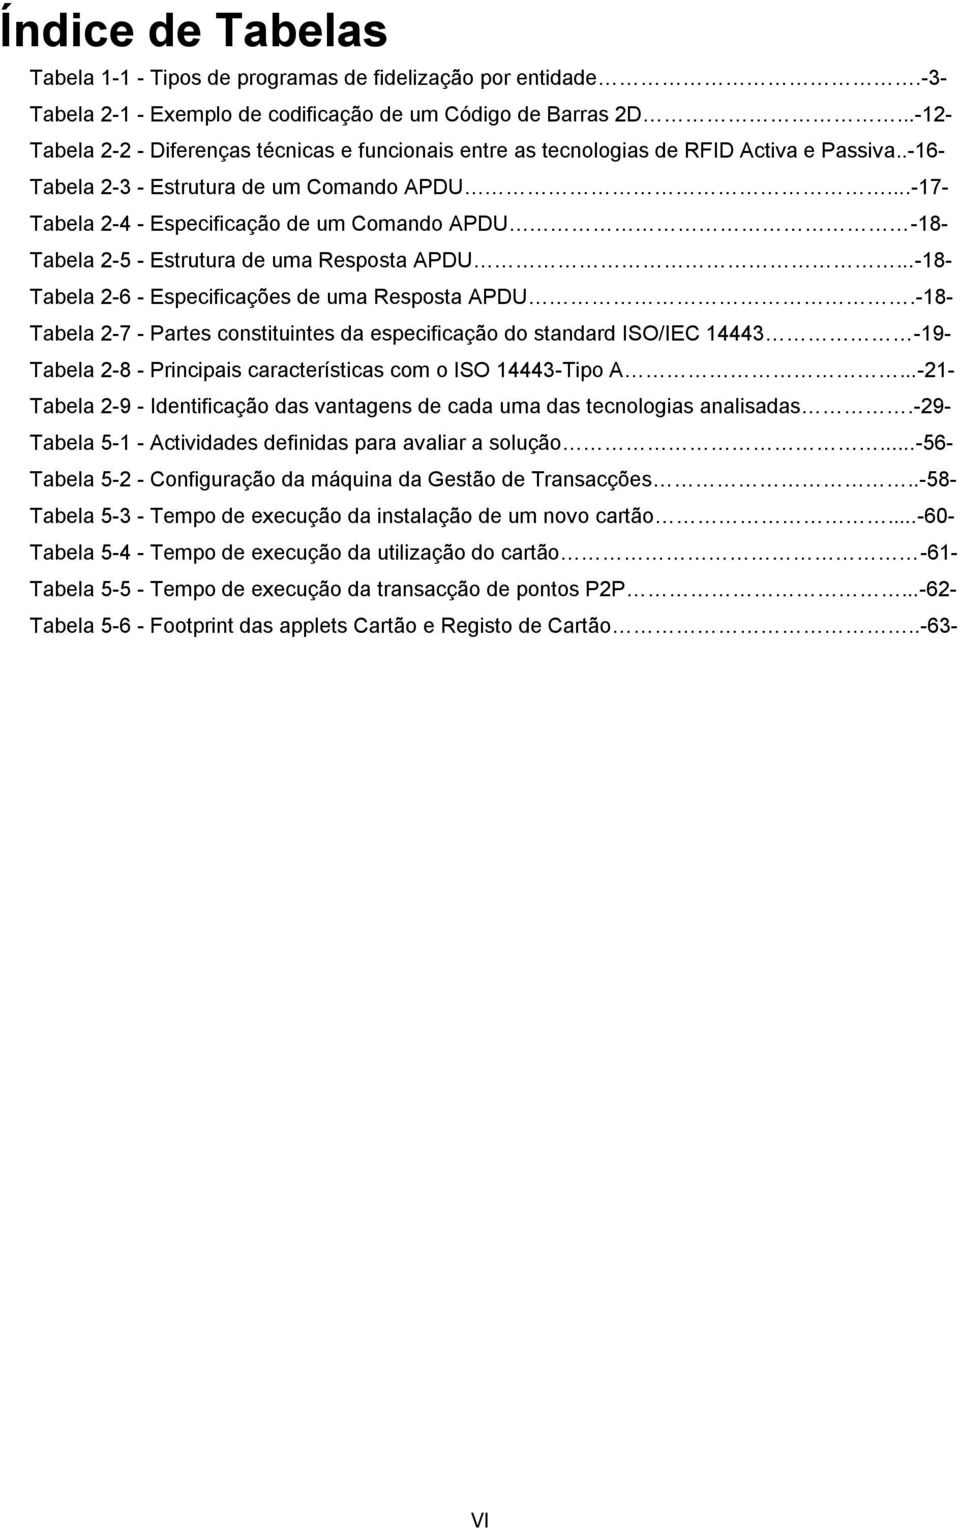 ..-17- Tabela 2-4 - Especificação de um Comando APDU -18- Tabela 2-5 - Estrutura de uma Resposta APDU...-18- Tabela 2-6 - Especificações de uma Resposta APDU.